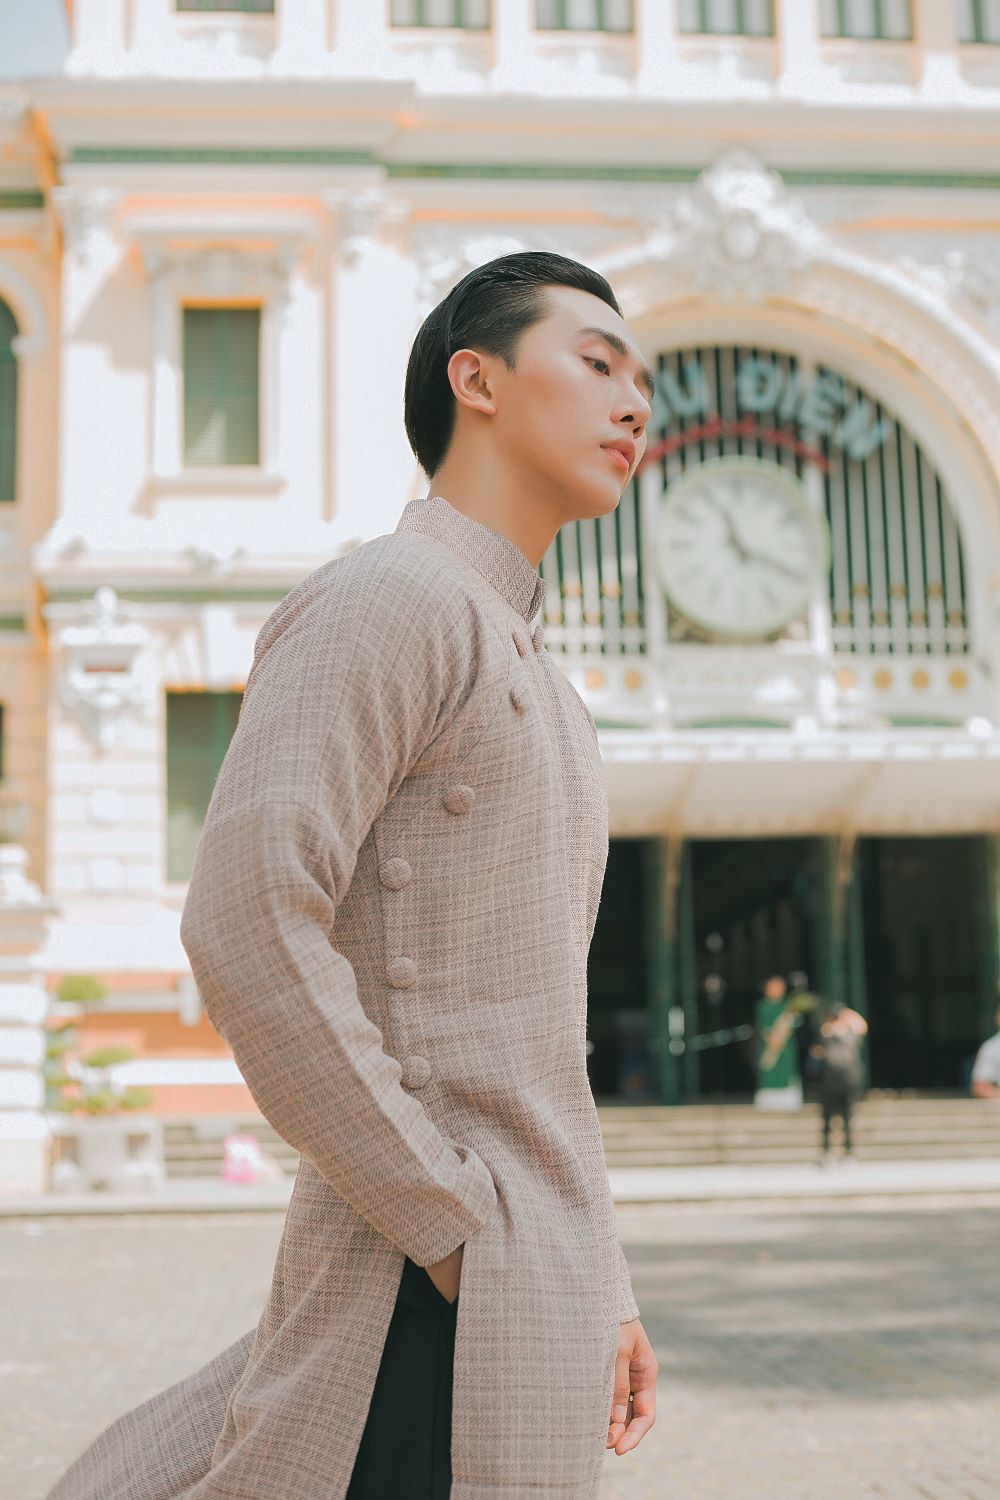 Dương Minh Đăng sải bước cùng tà áo dài màu nâu nhạt trước cổng Bưu điện thành phố.